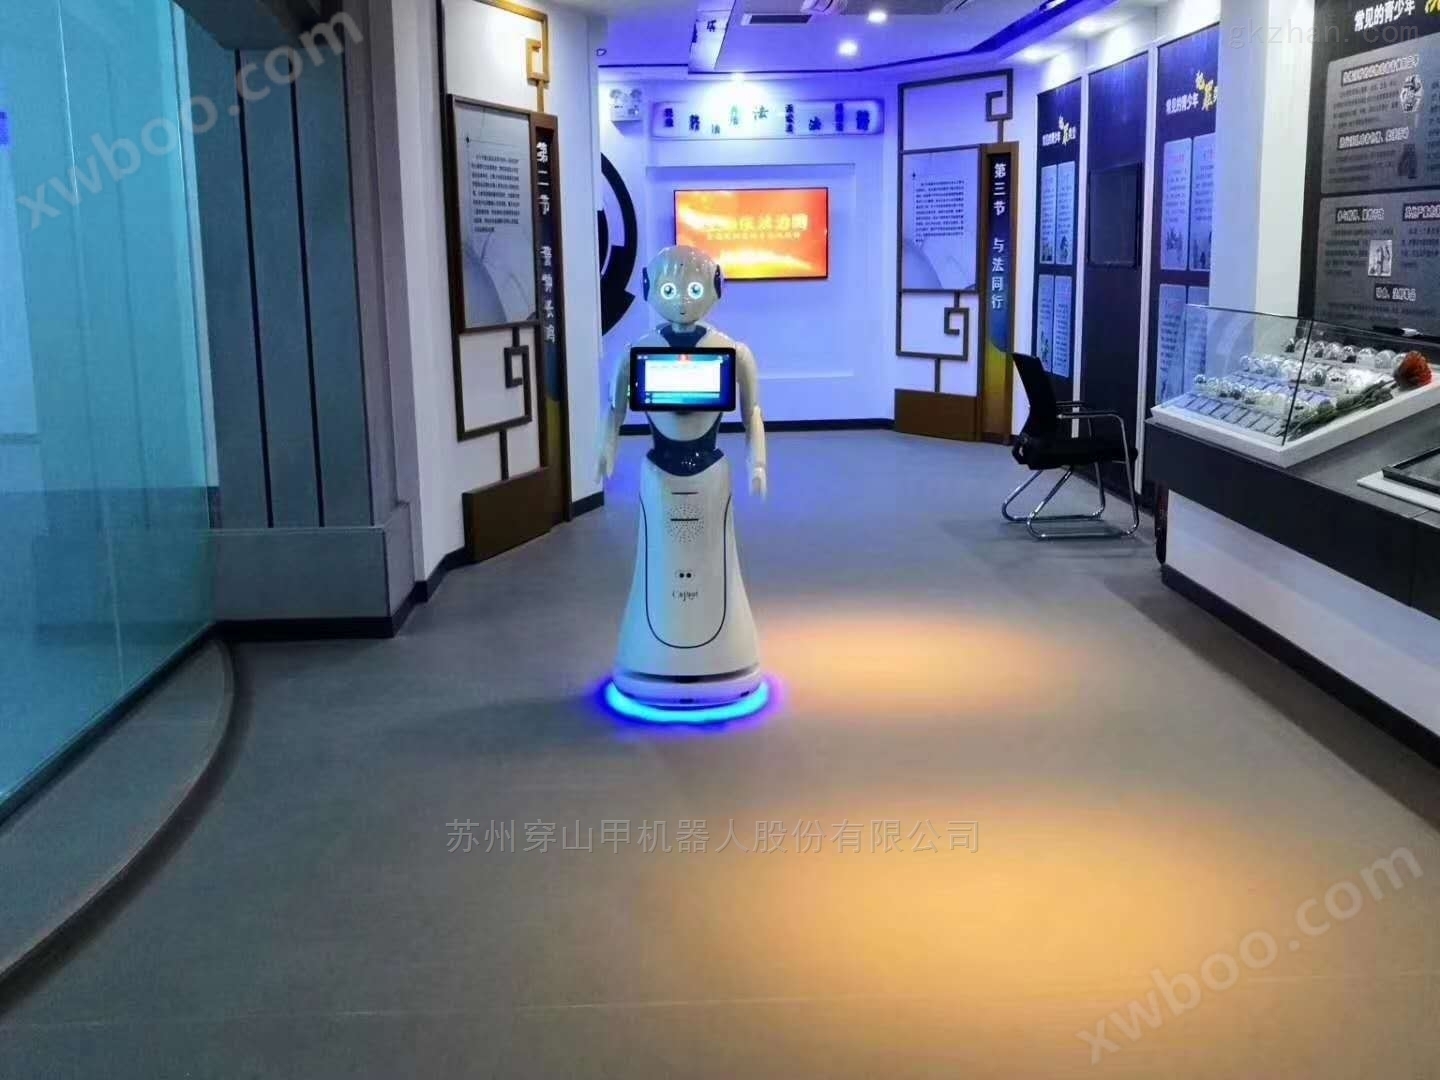 展馆讲解机器人